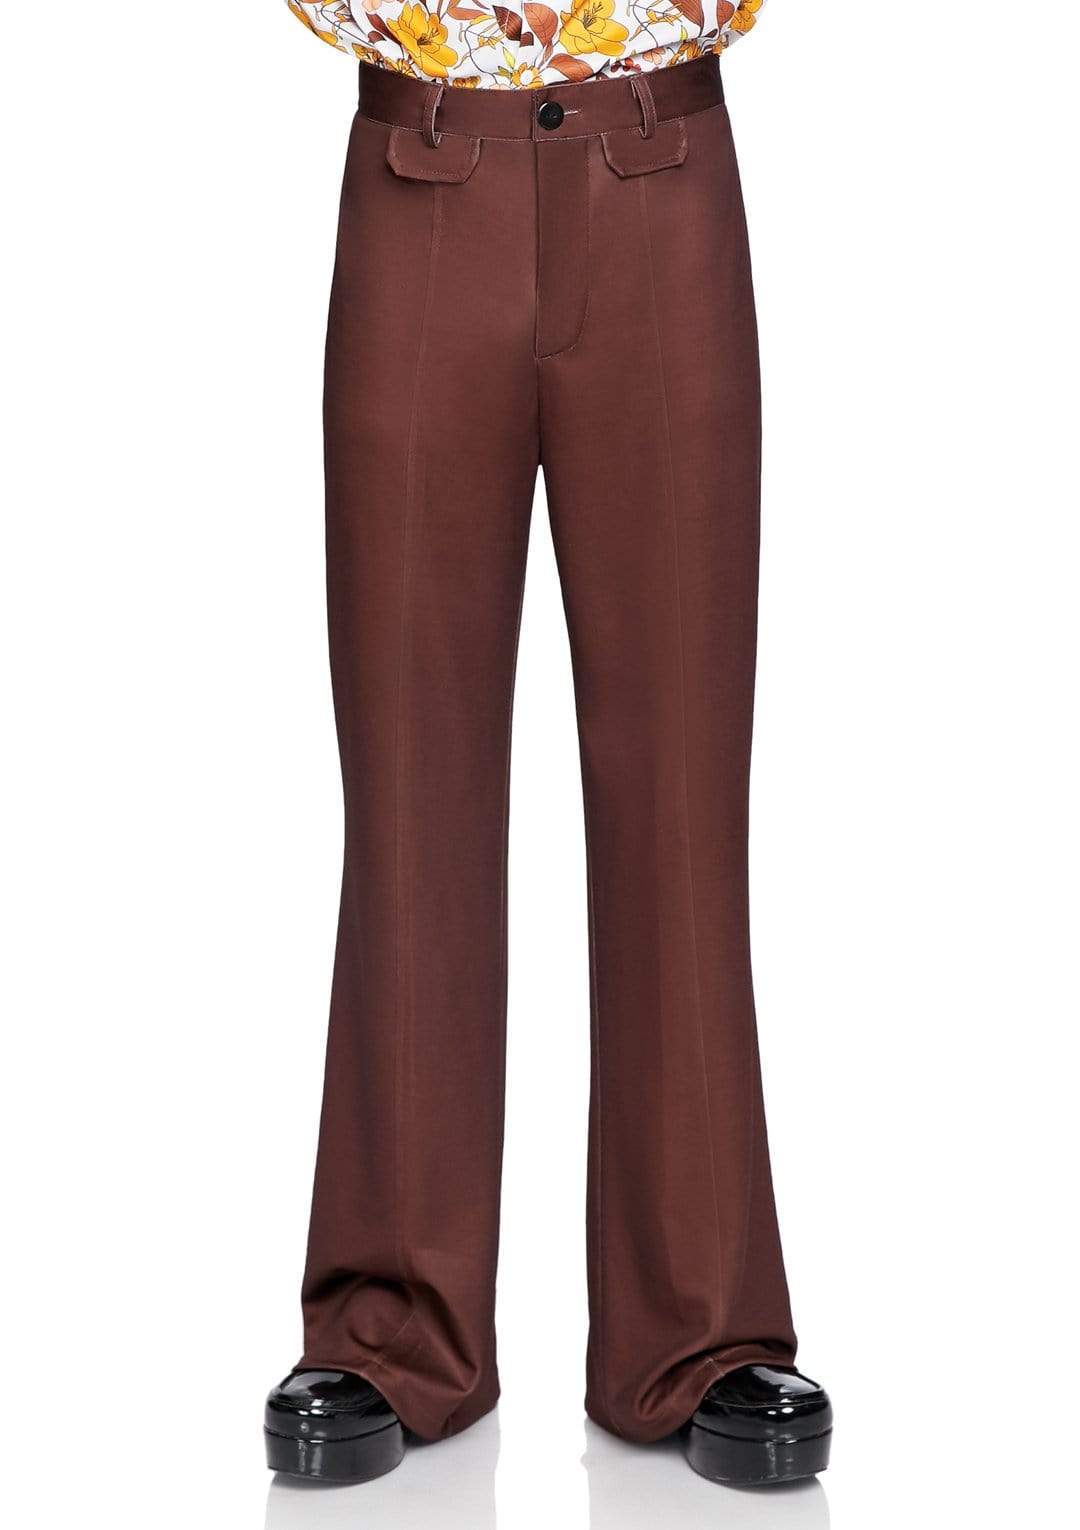 Women’s 70s Bell Bottom Pants Costume - Standard